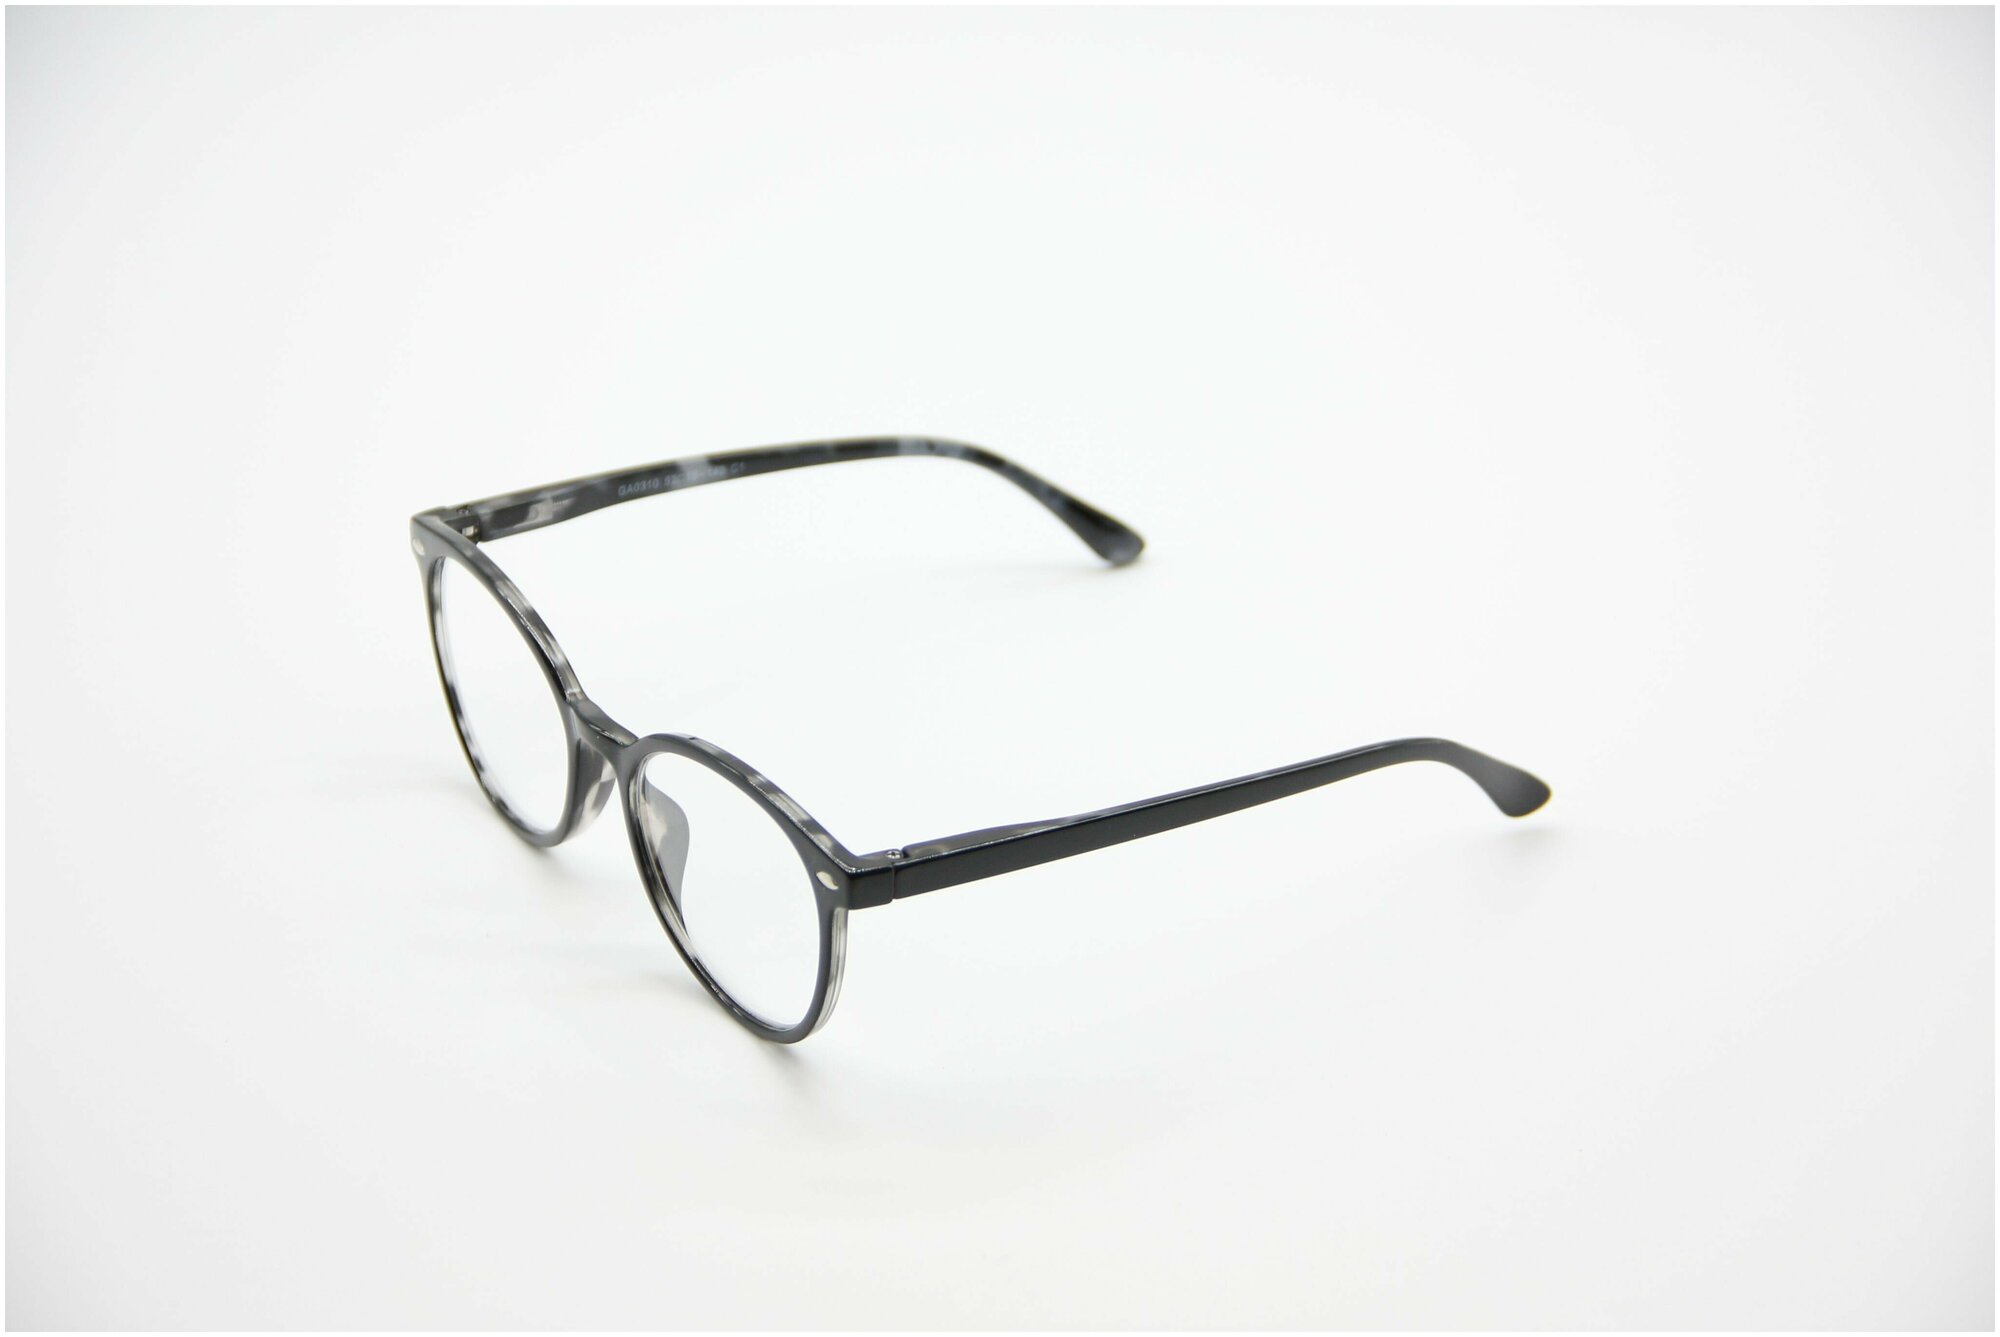 Готовые очки для зрения Marcello GA0310 C1 с диоптриями -3 /Очки женские корректирующие/Кошачий глаз/Флексовое крепление дужек/Футляр в комплекте